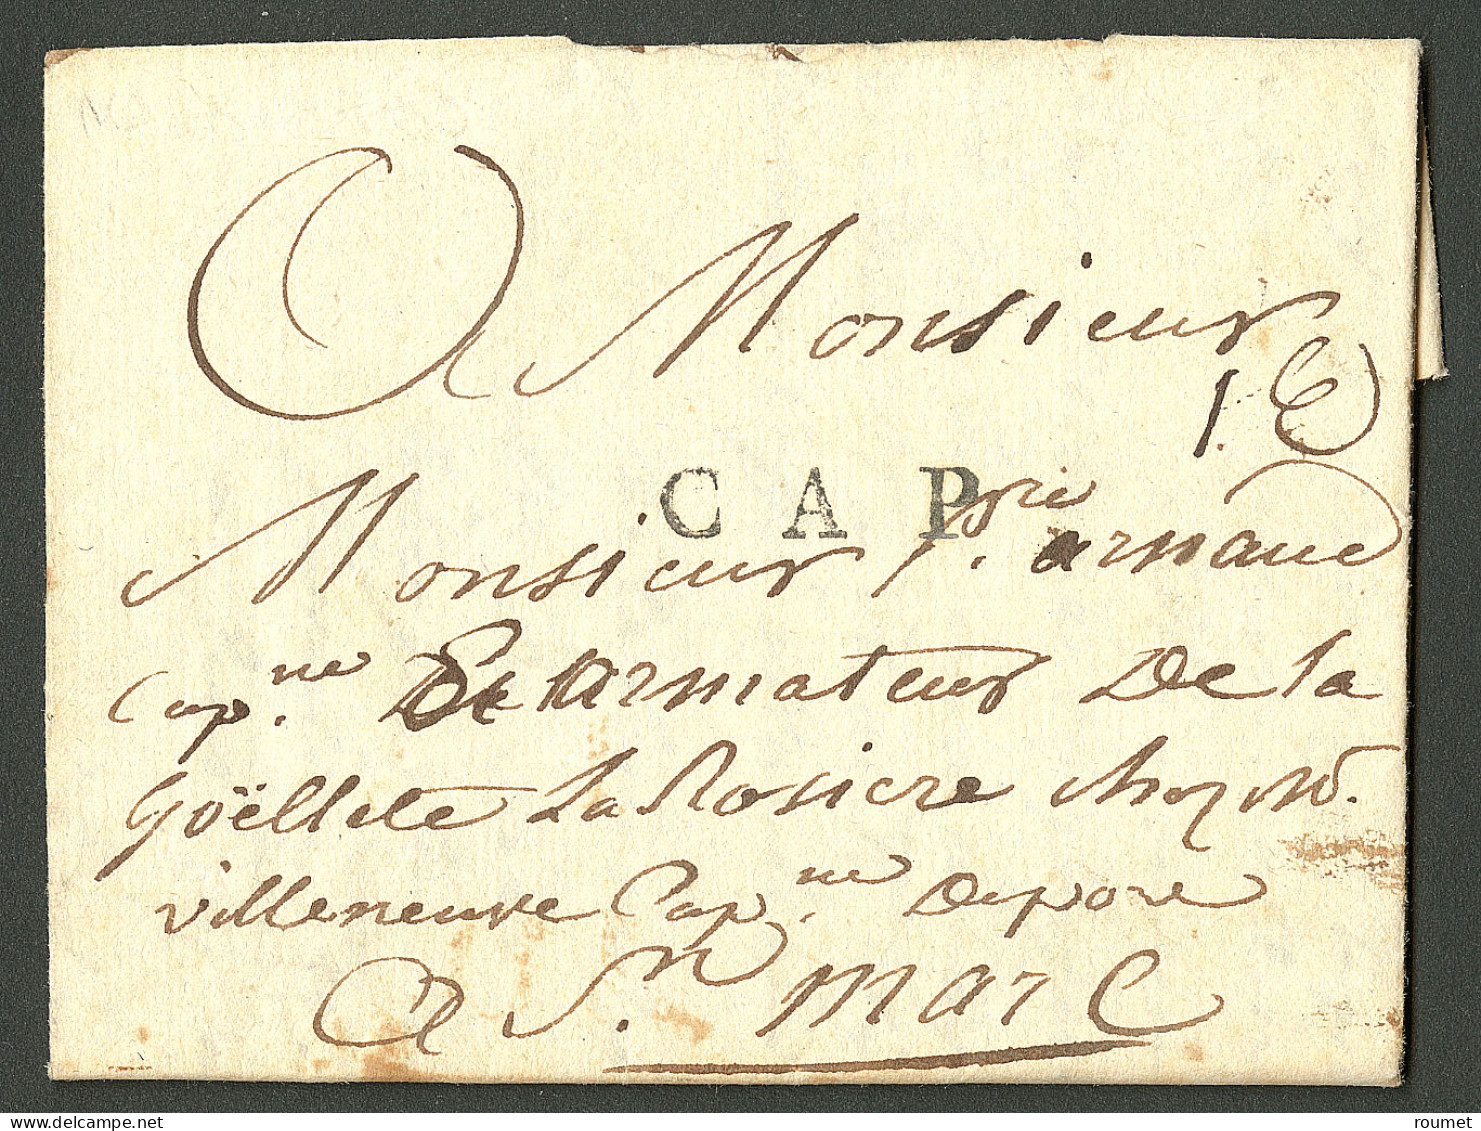 Lettre Cap (Jamet N°10). Lettre Avec Texte Daté Du 21 Mars 1783 Pour Saint Marc. TB. - Haití